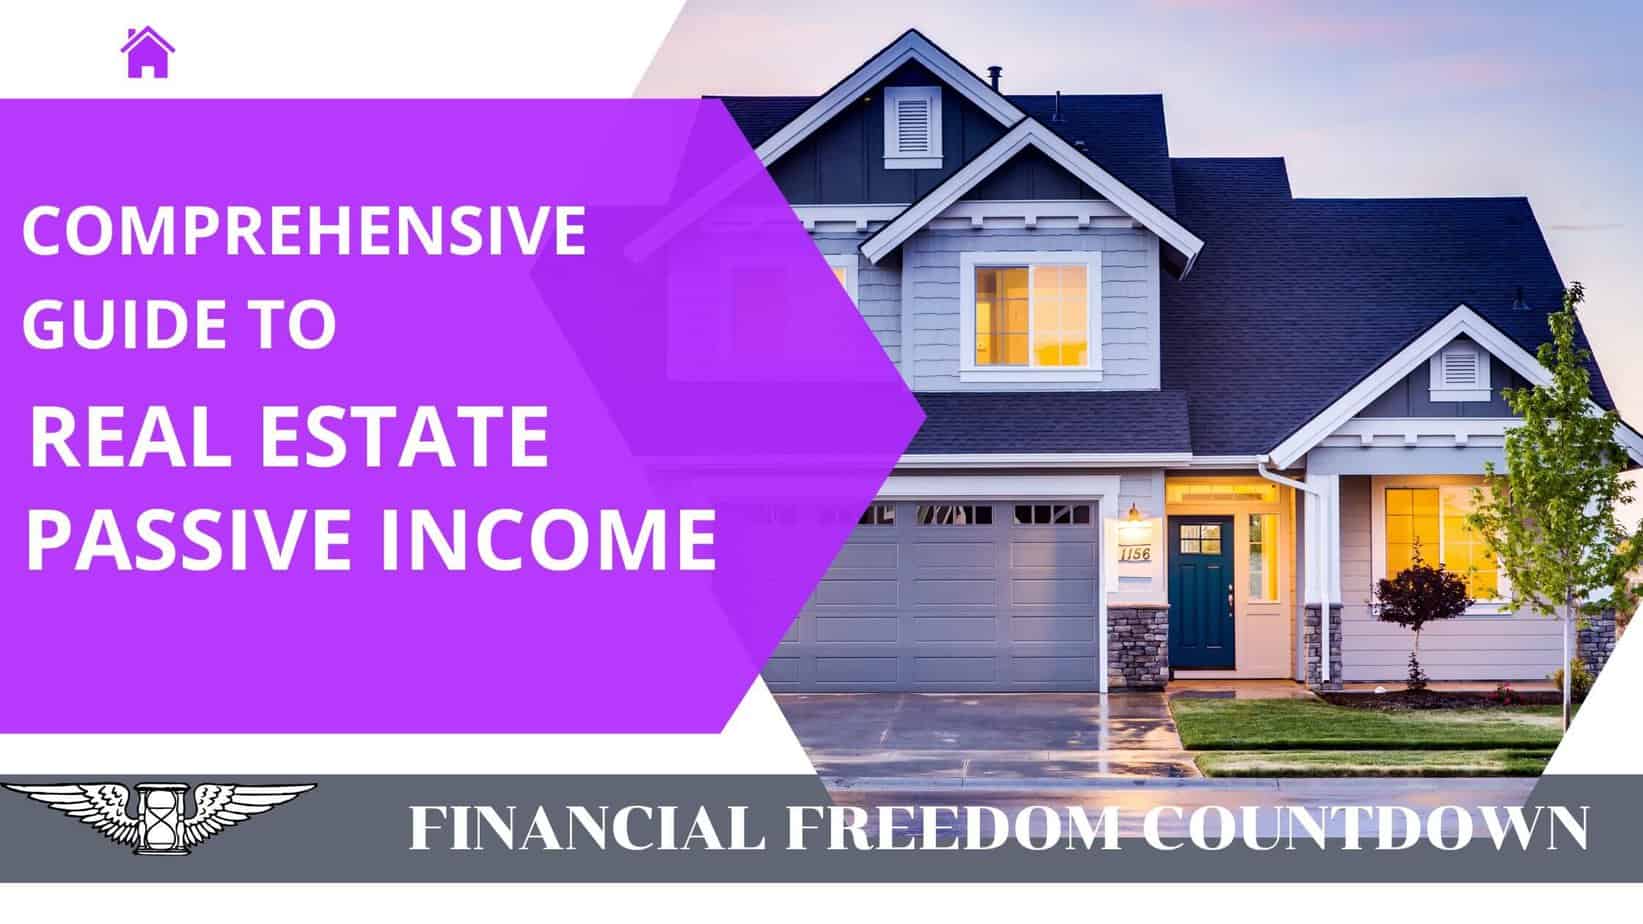 Real Estate Passive Income Guide